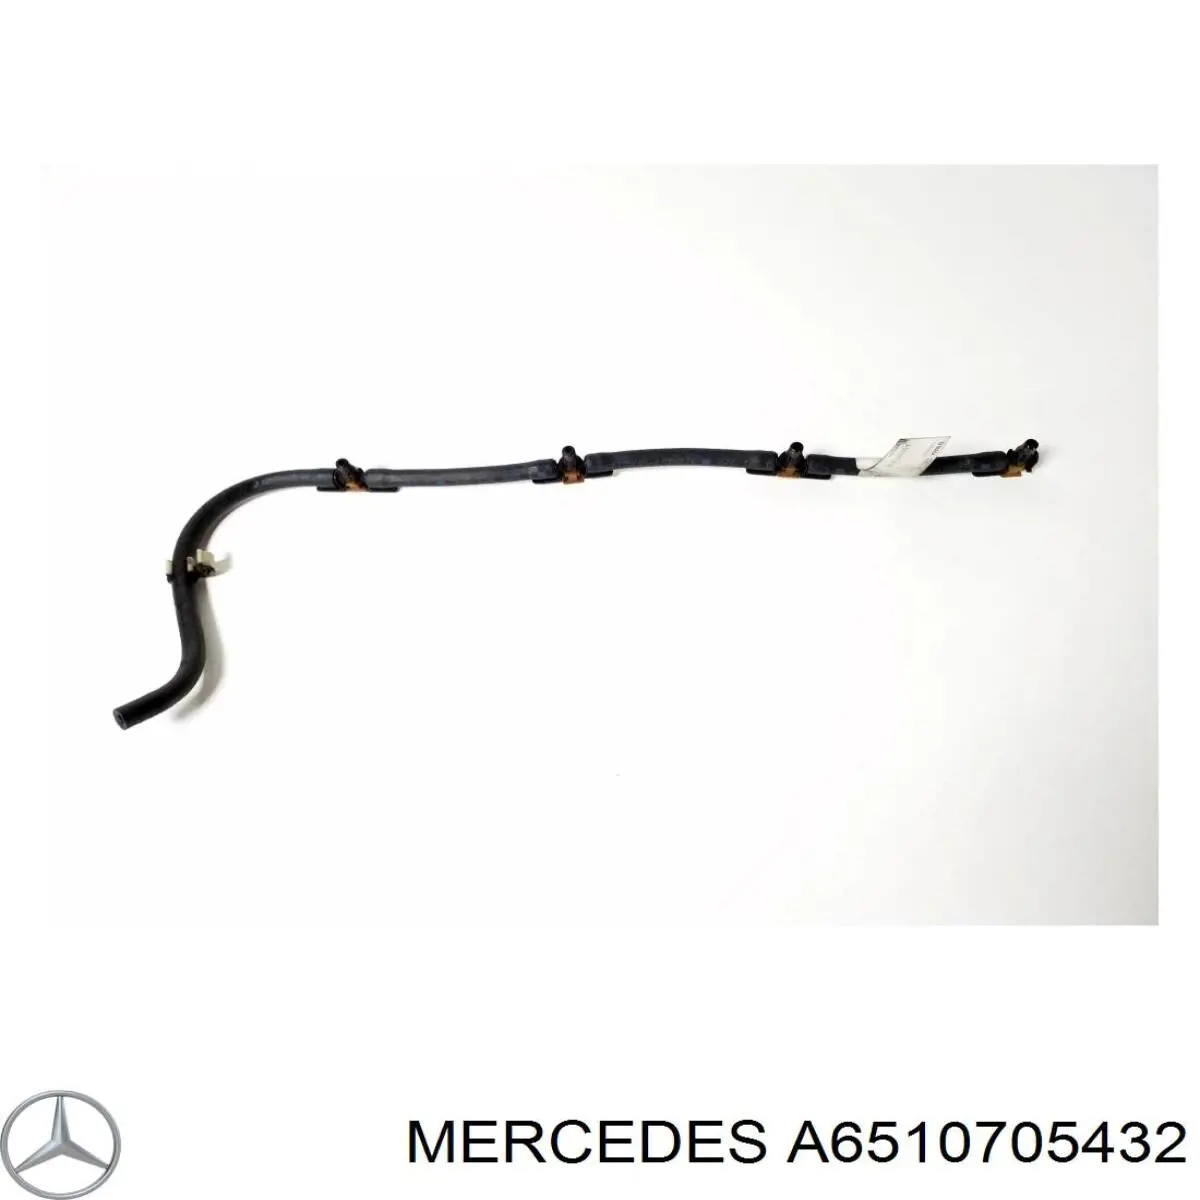 6510705432 Mercedes трубка топливная, обратная от форсунок